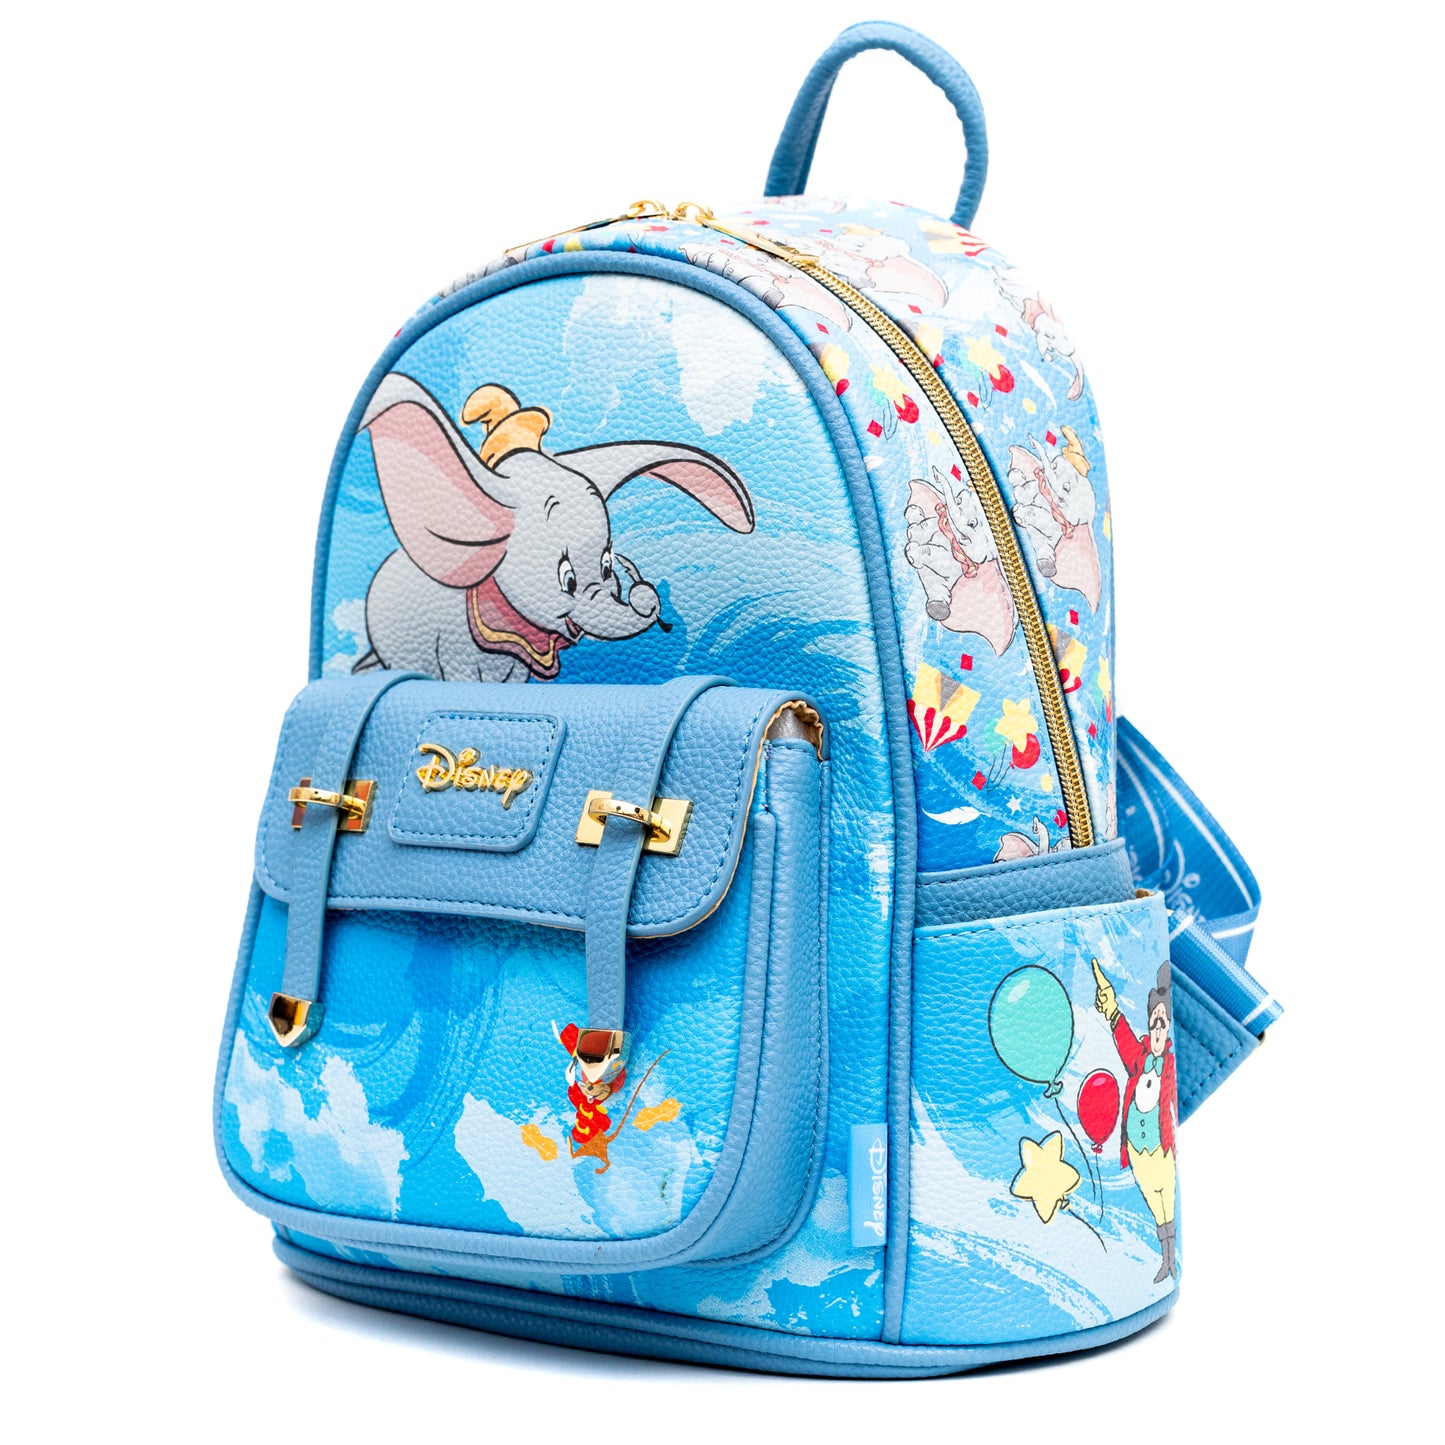 WondaPop Disney Dumbo 11 Vegan Leather Fashion Mini Backpack